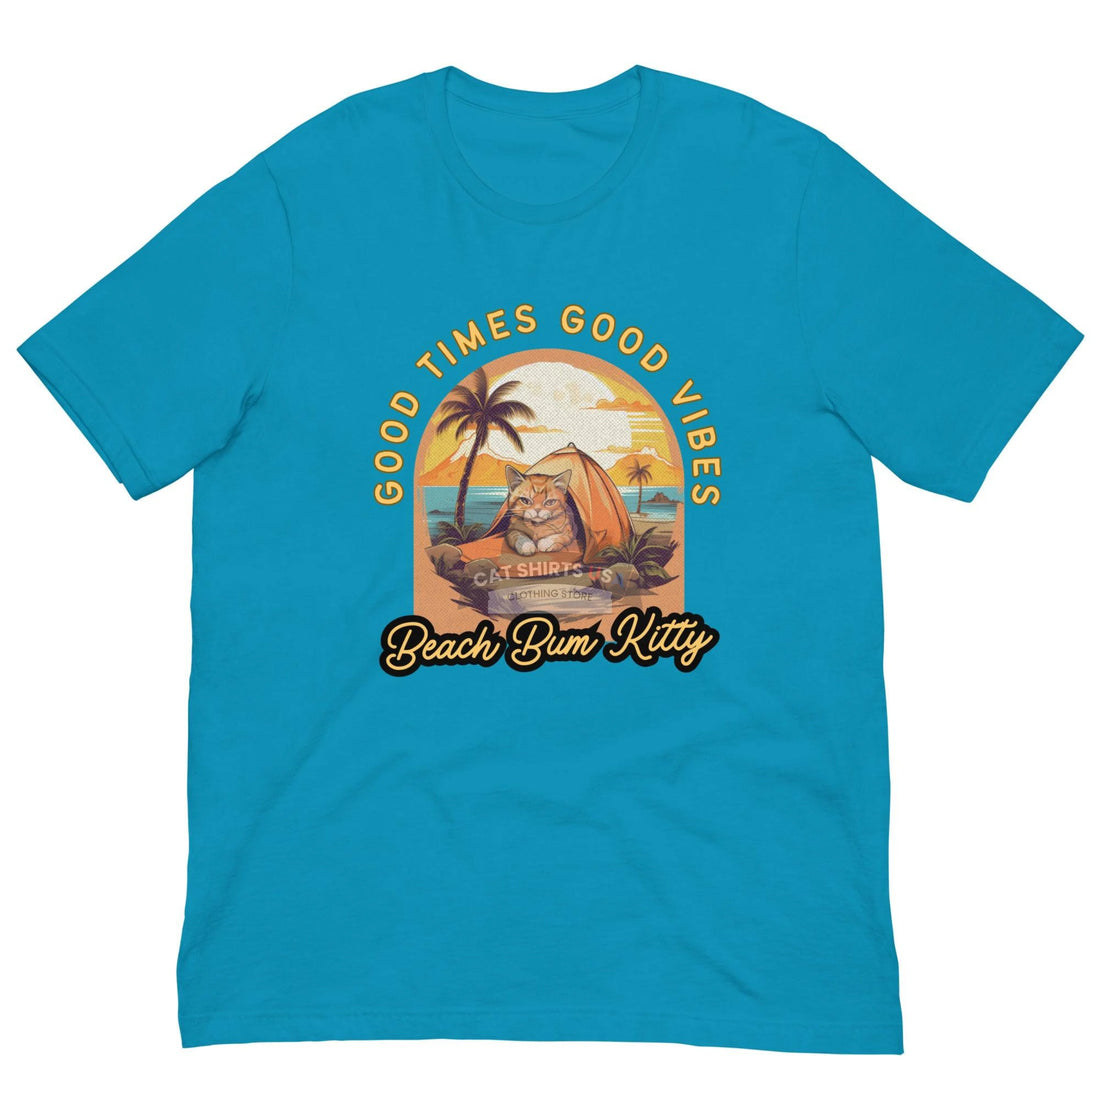 Beach Bum Kitty Cat Shirt - Cat Shirts USA